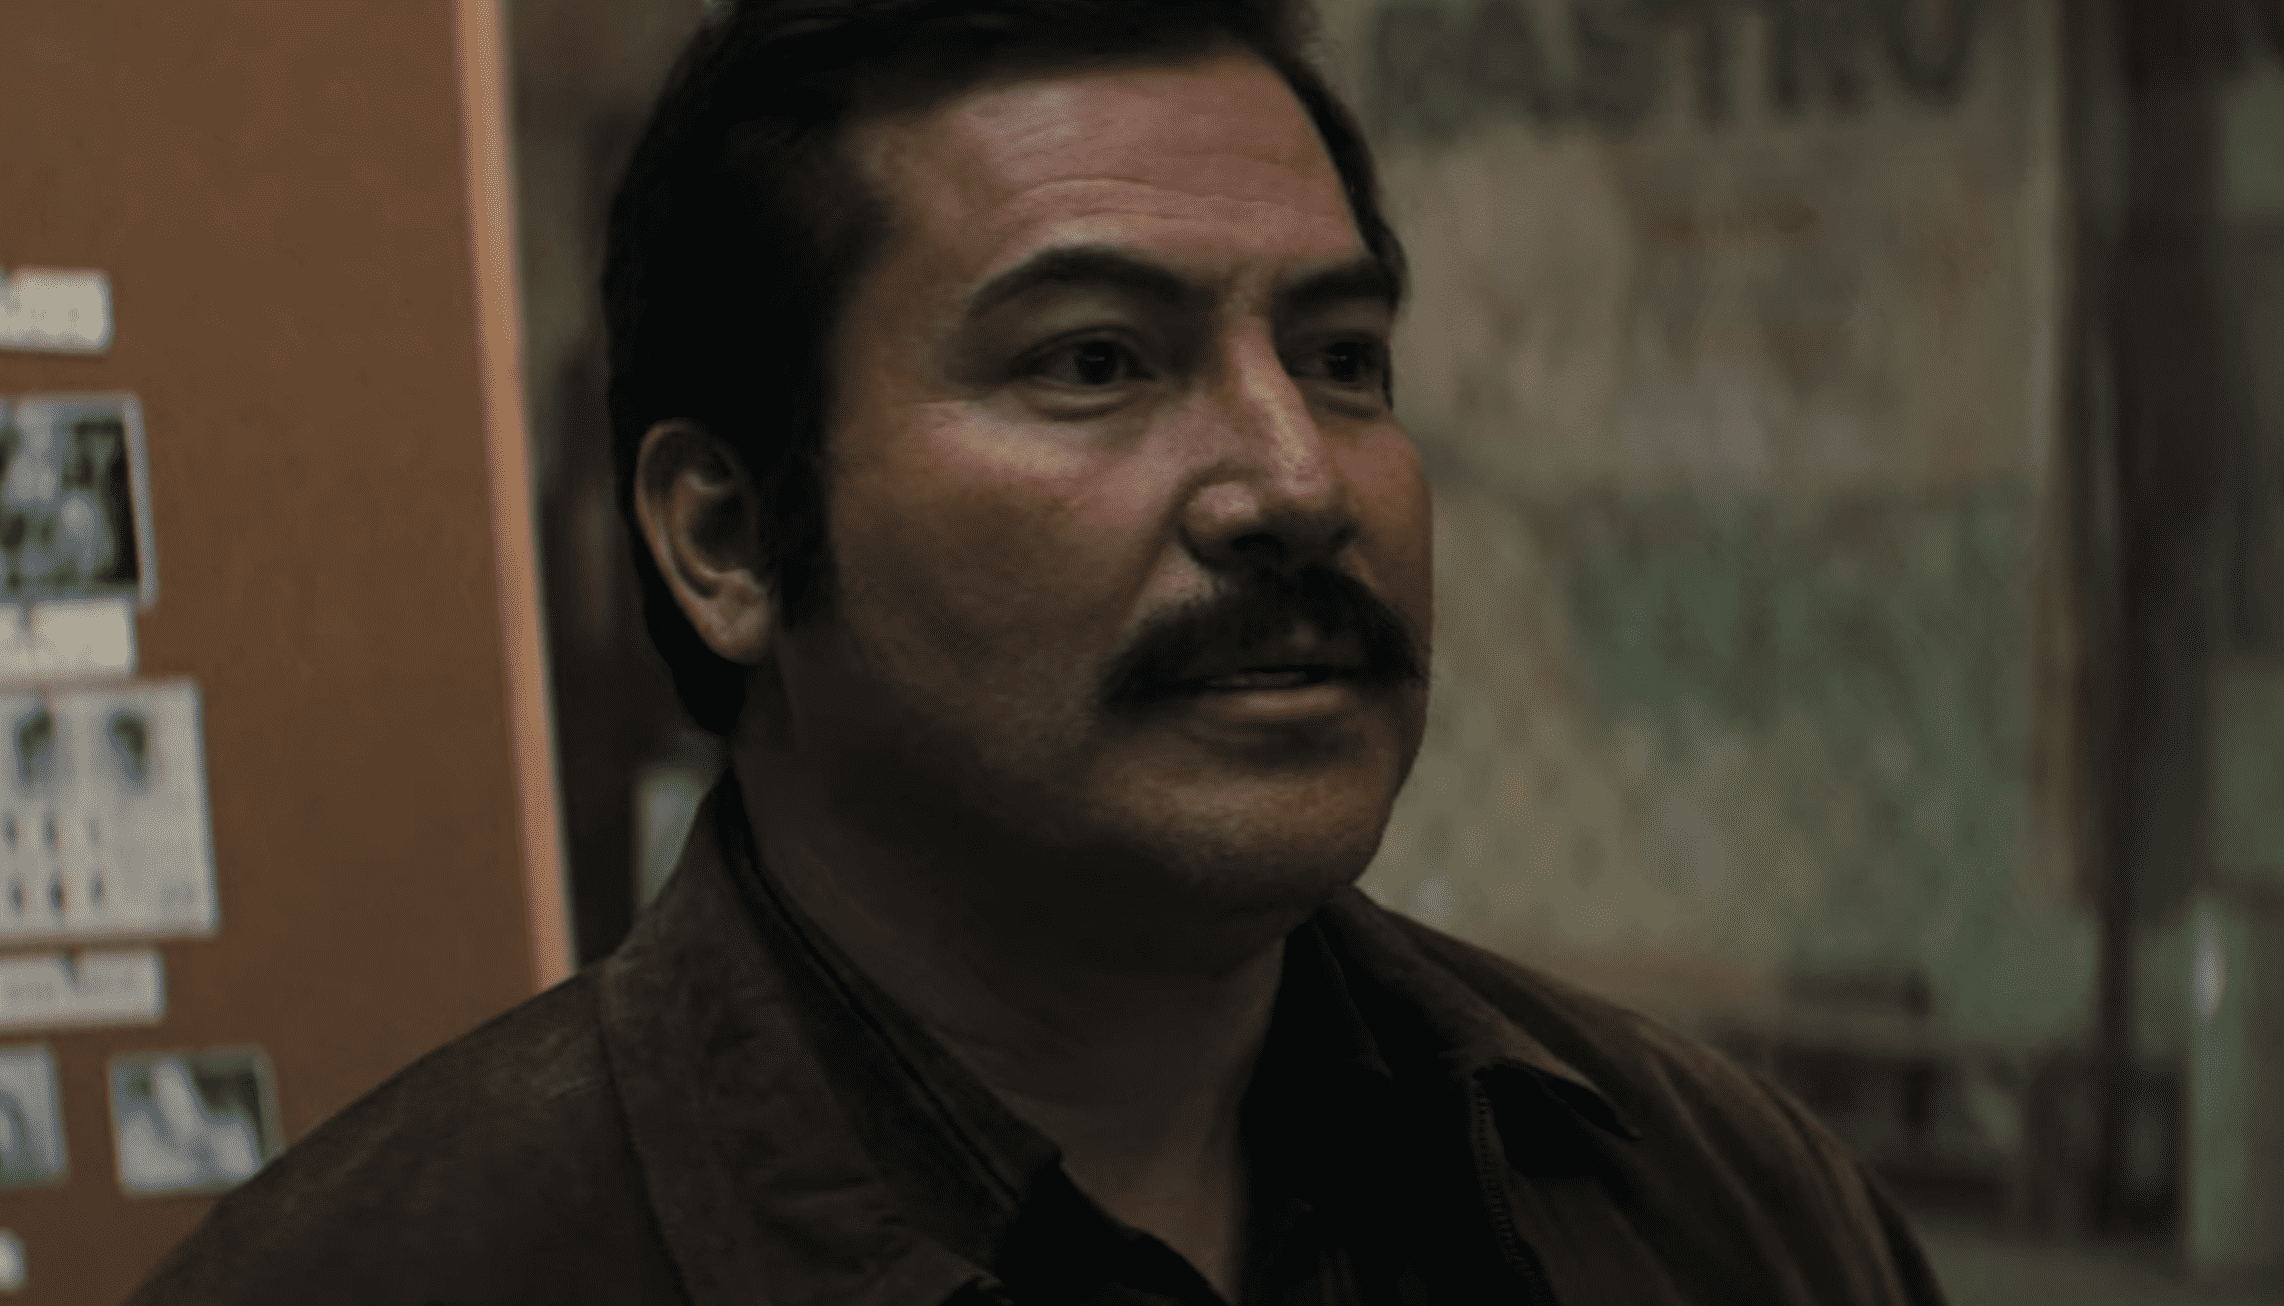 Narcos: Mexico' Season 2 Episode 4 Recap: Tunnel Vision